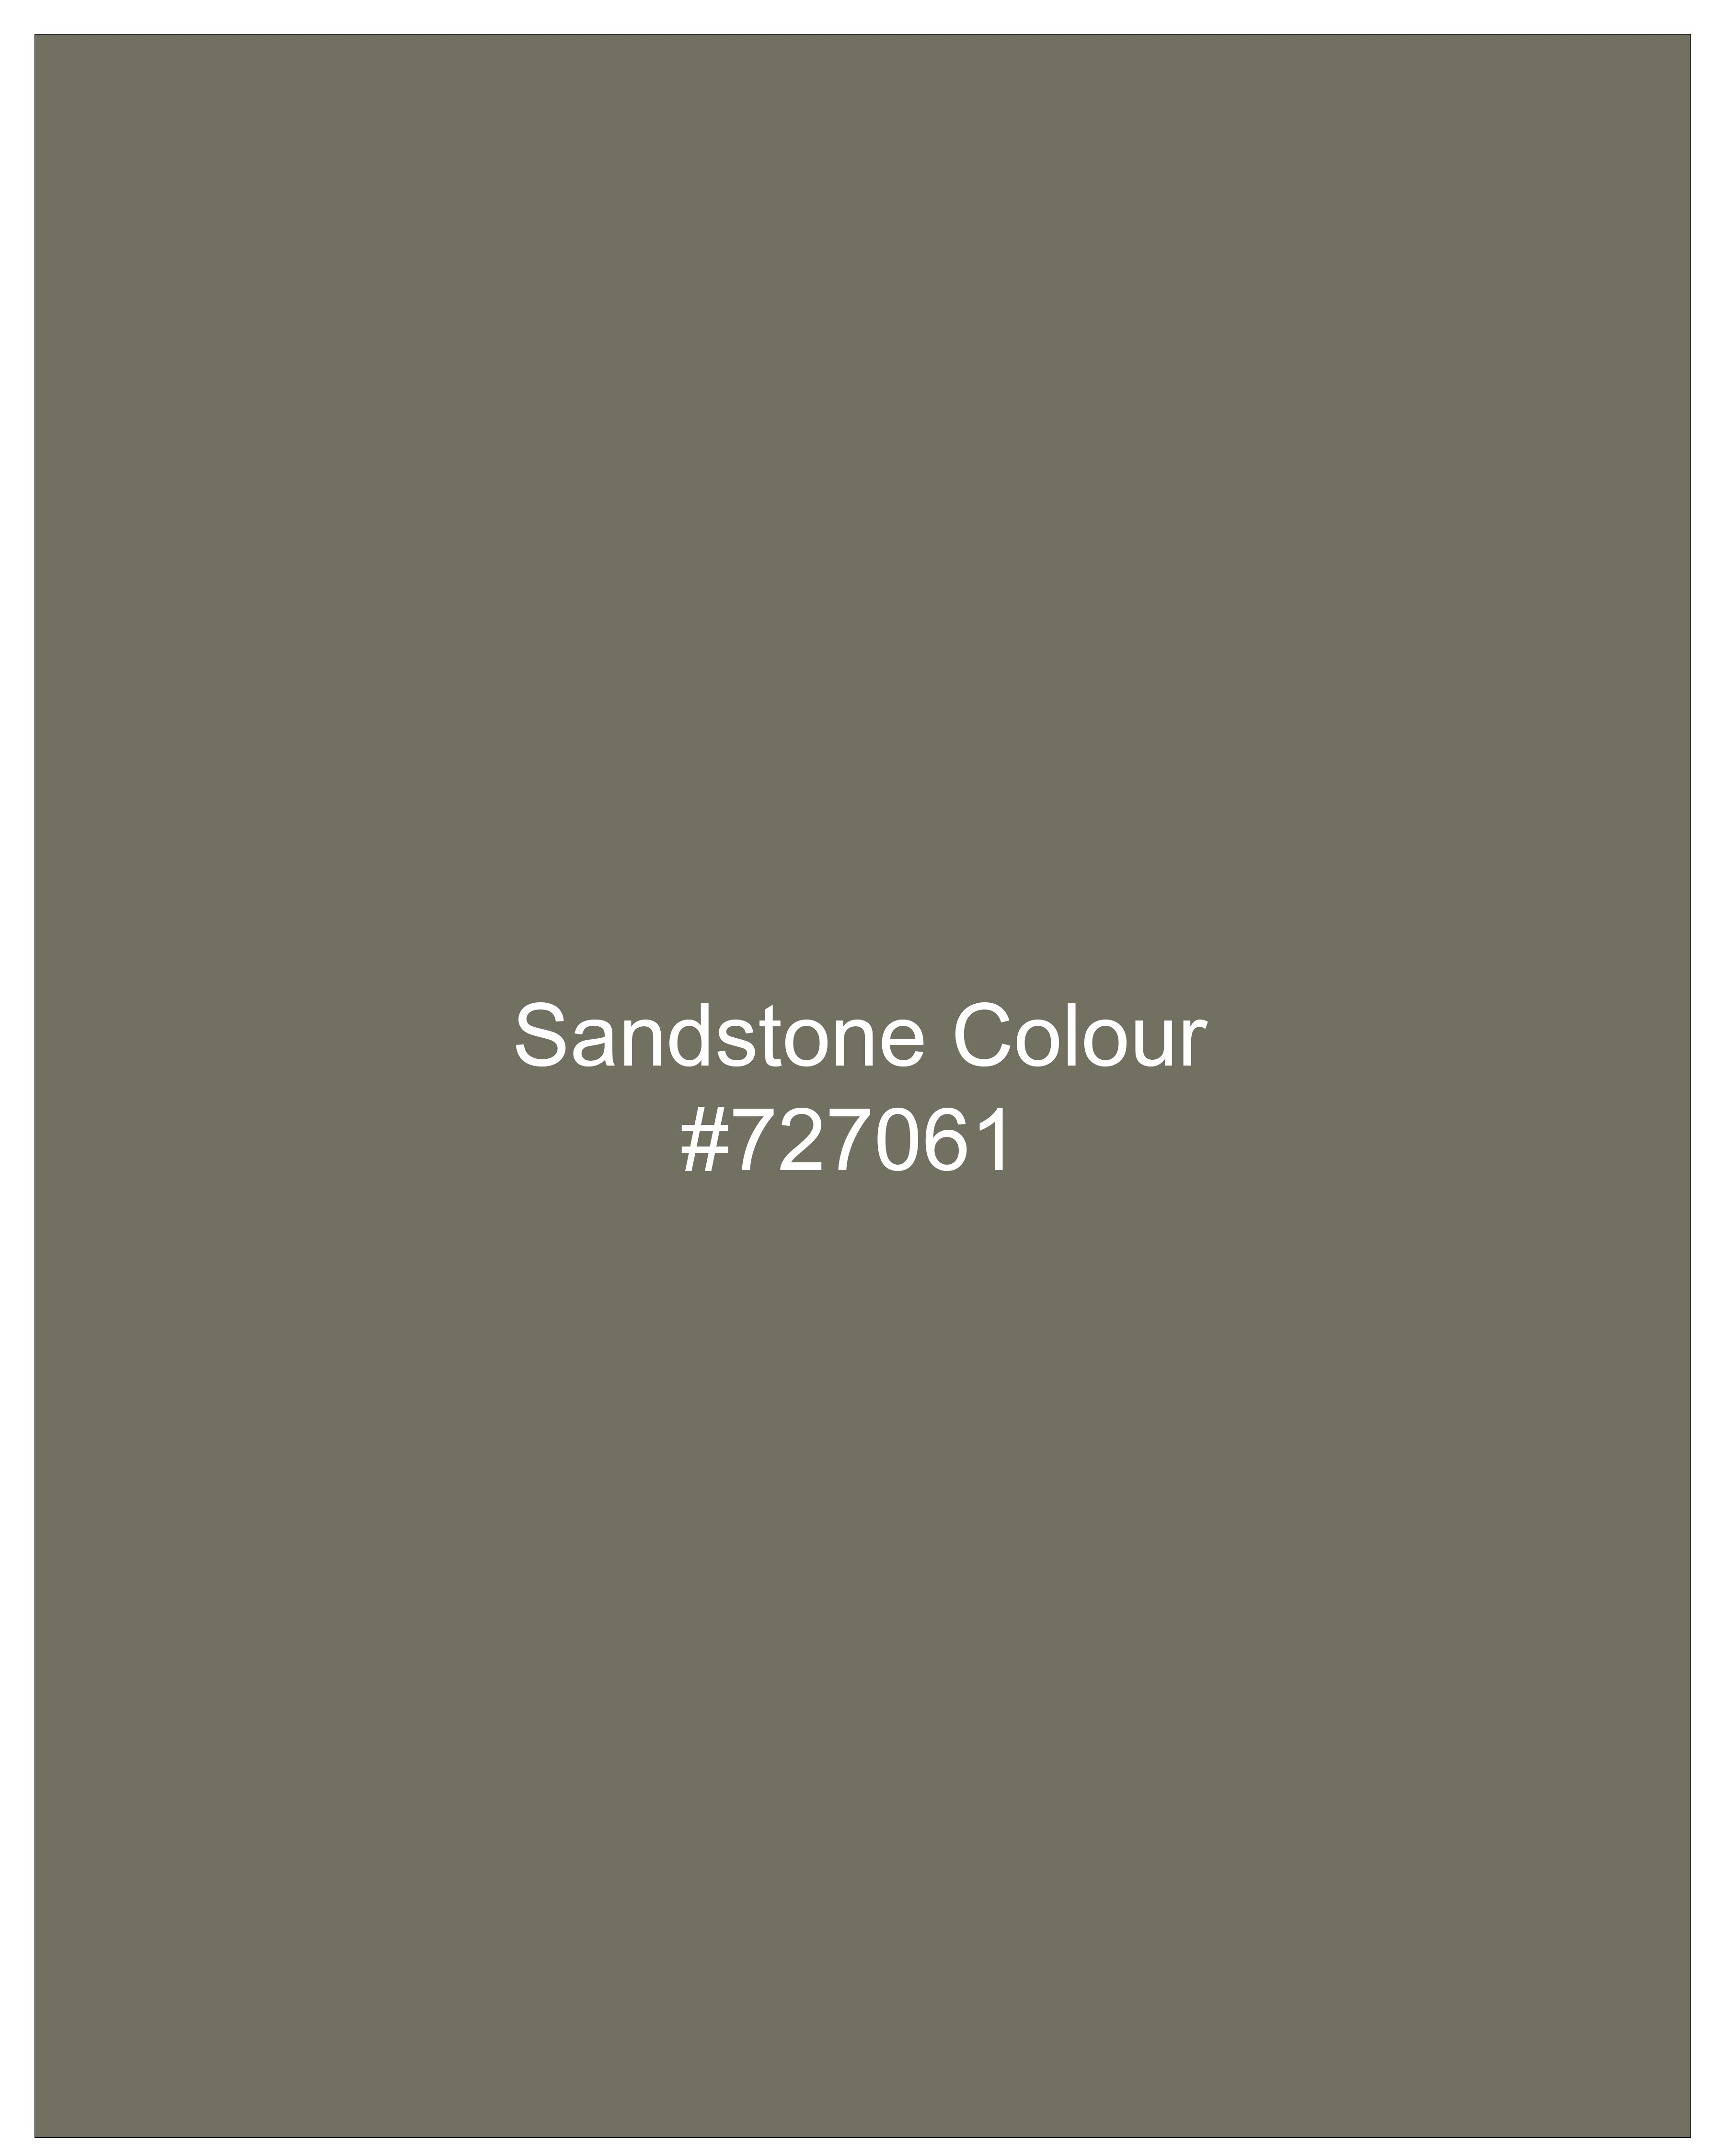 Sandstonne Green Pant  T2247-28, T2247-30, T2247-32, T2247-34, T2247-36, T2247-38, T2247-40, T2247-42, T2247-44